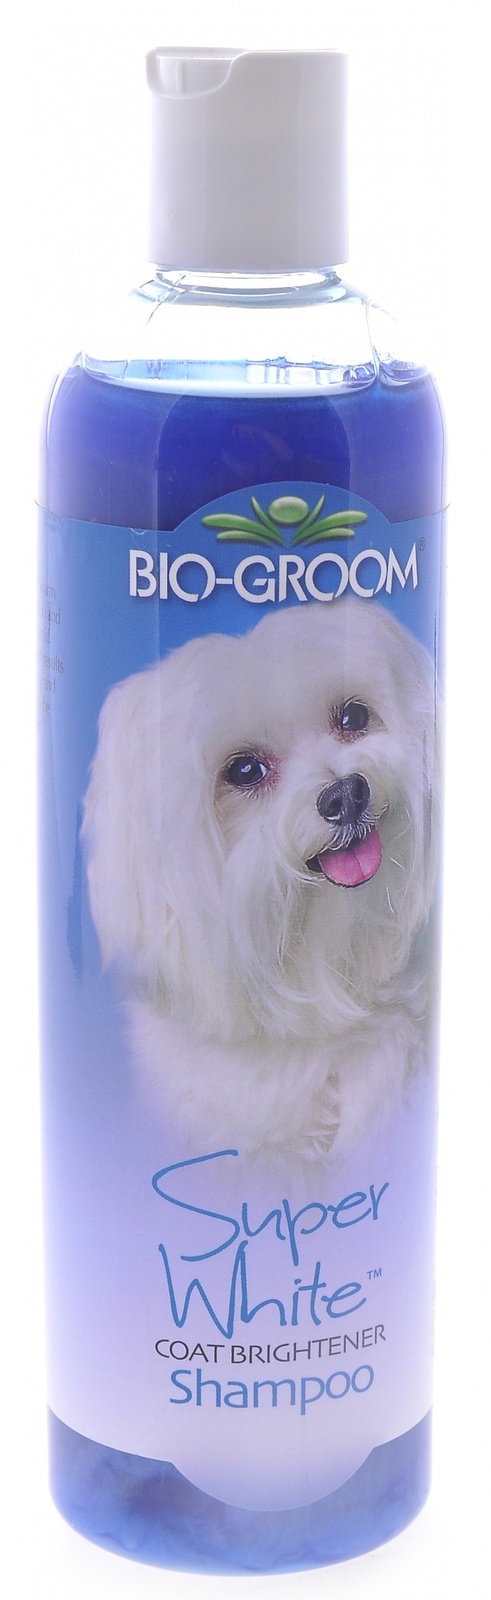 Biogroom Biogroom шампунь Супер Белый, концентрация 1:8, 3.2 литра готового шампуня (355 г) biogroom biogroom кондиционер шелковый концентрат 1 4 silk conditioner 355 г